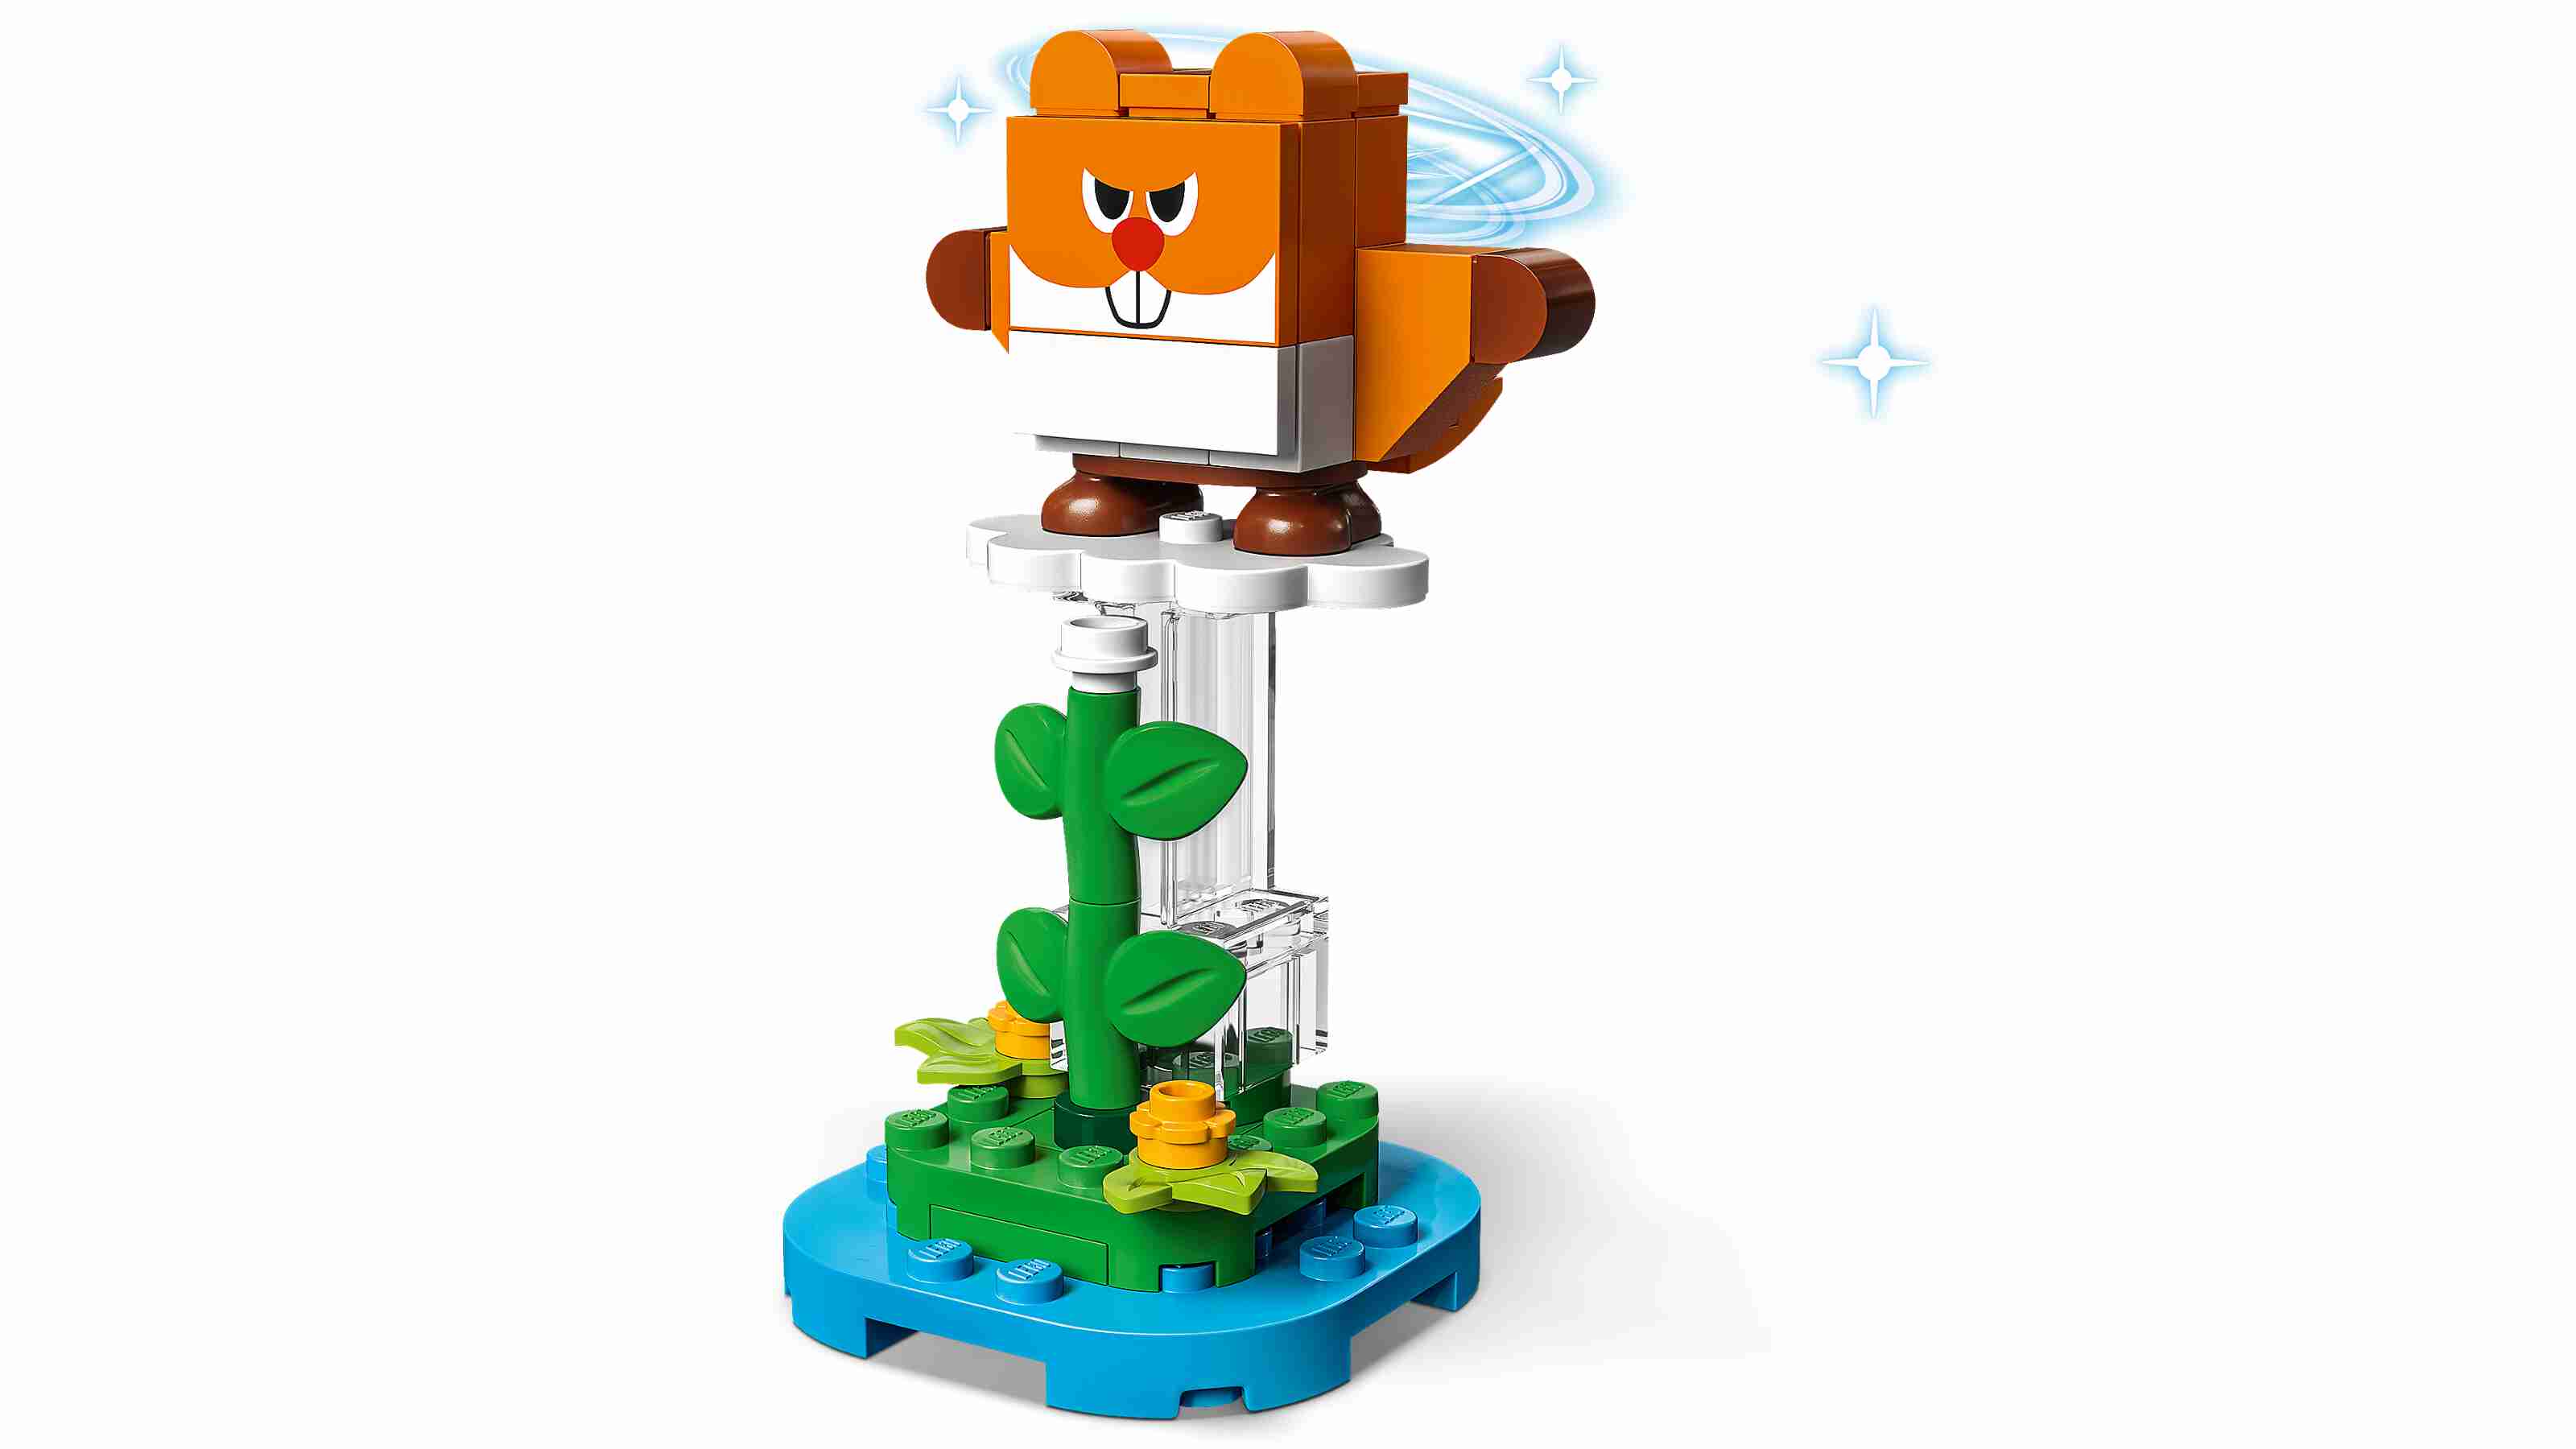 LEGO 71410 Super Mario Mario-Charaktere-Serie 5, 1 von 8 Sammelfiguren